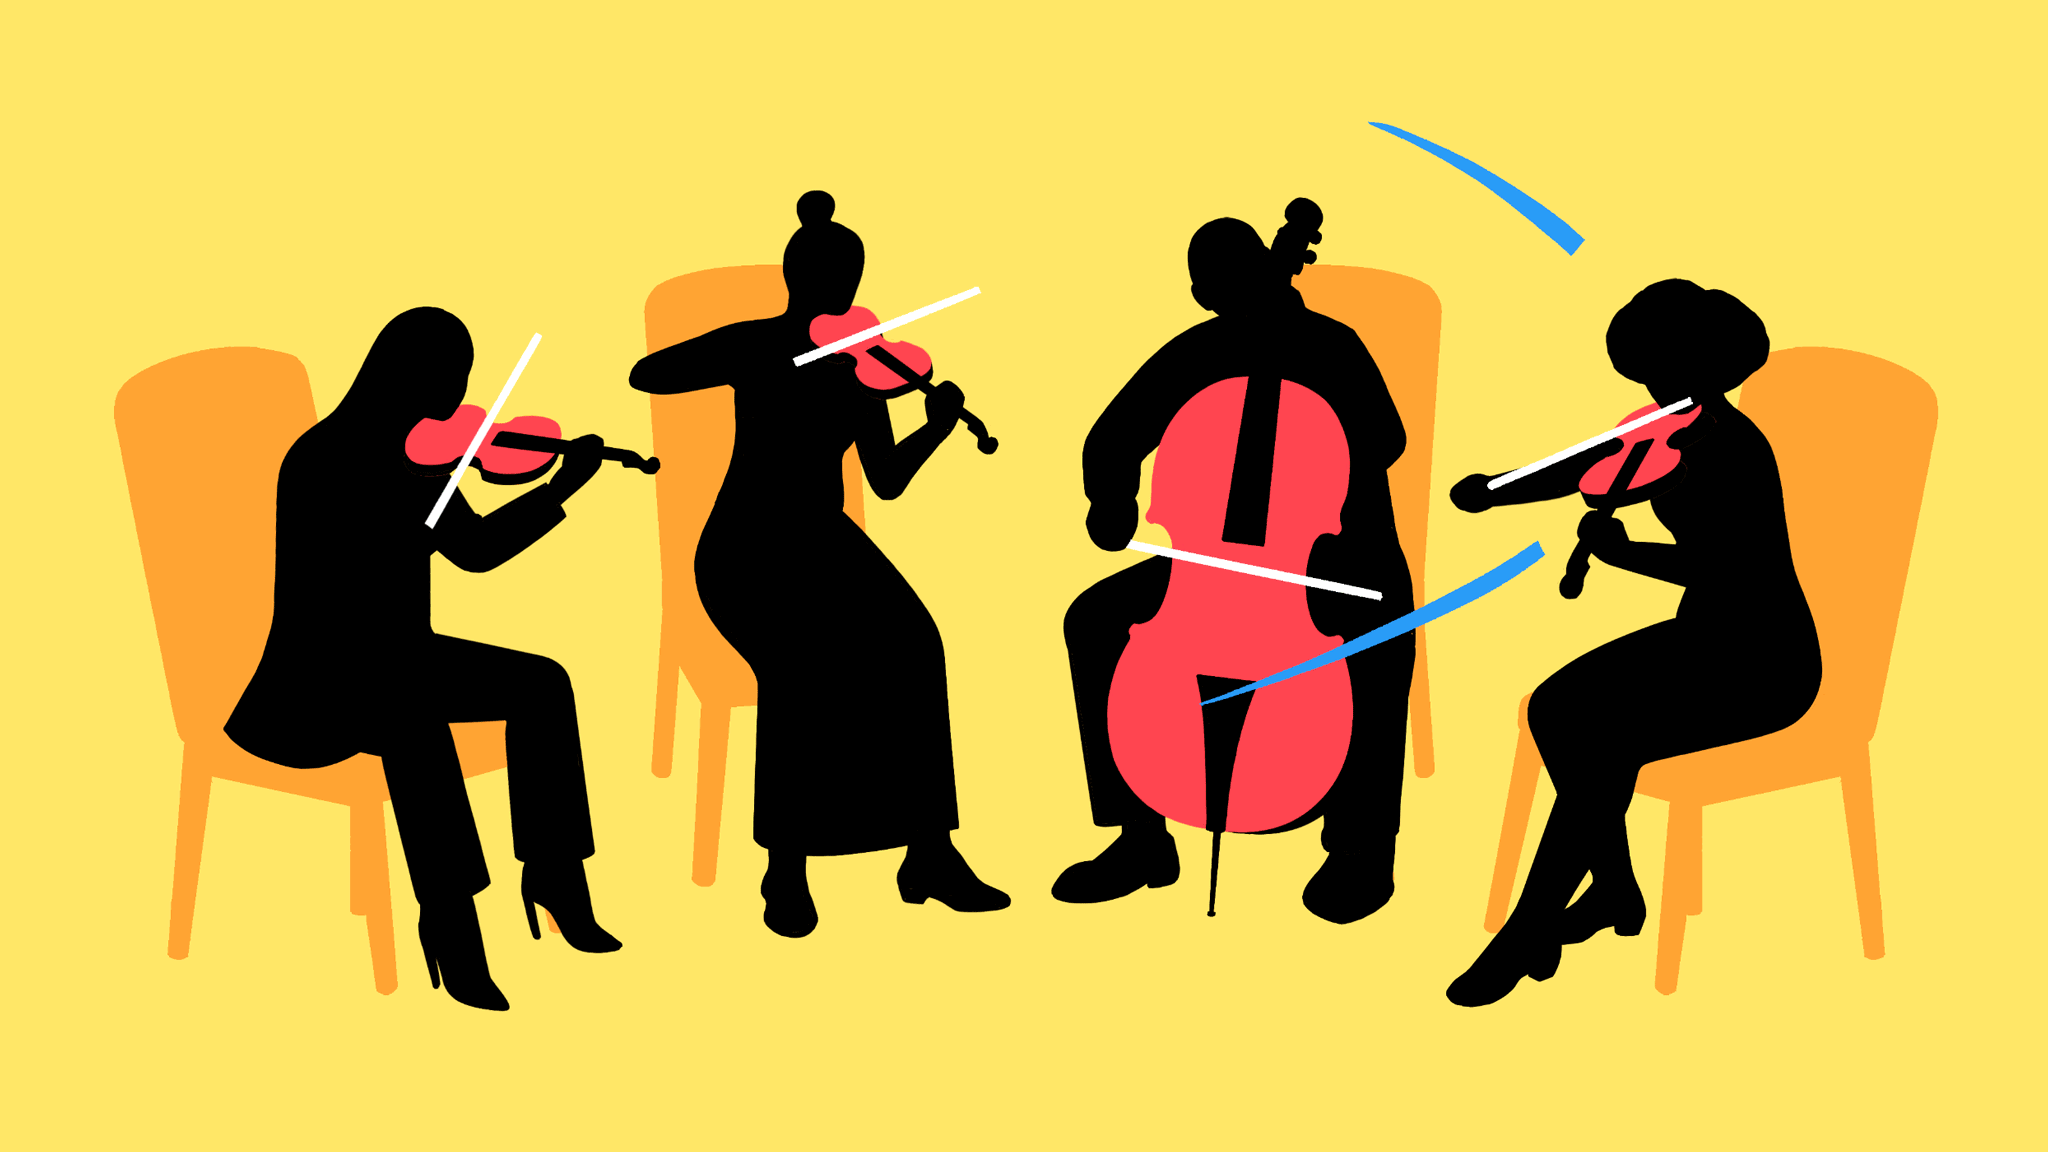 quartet playing